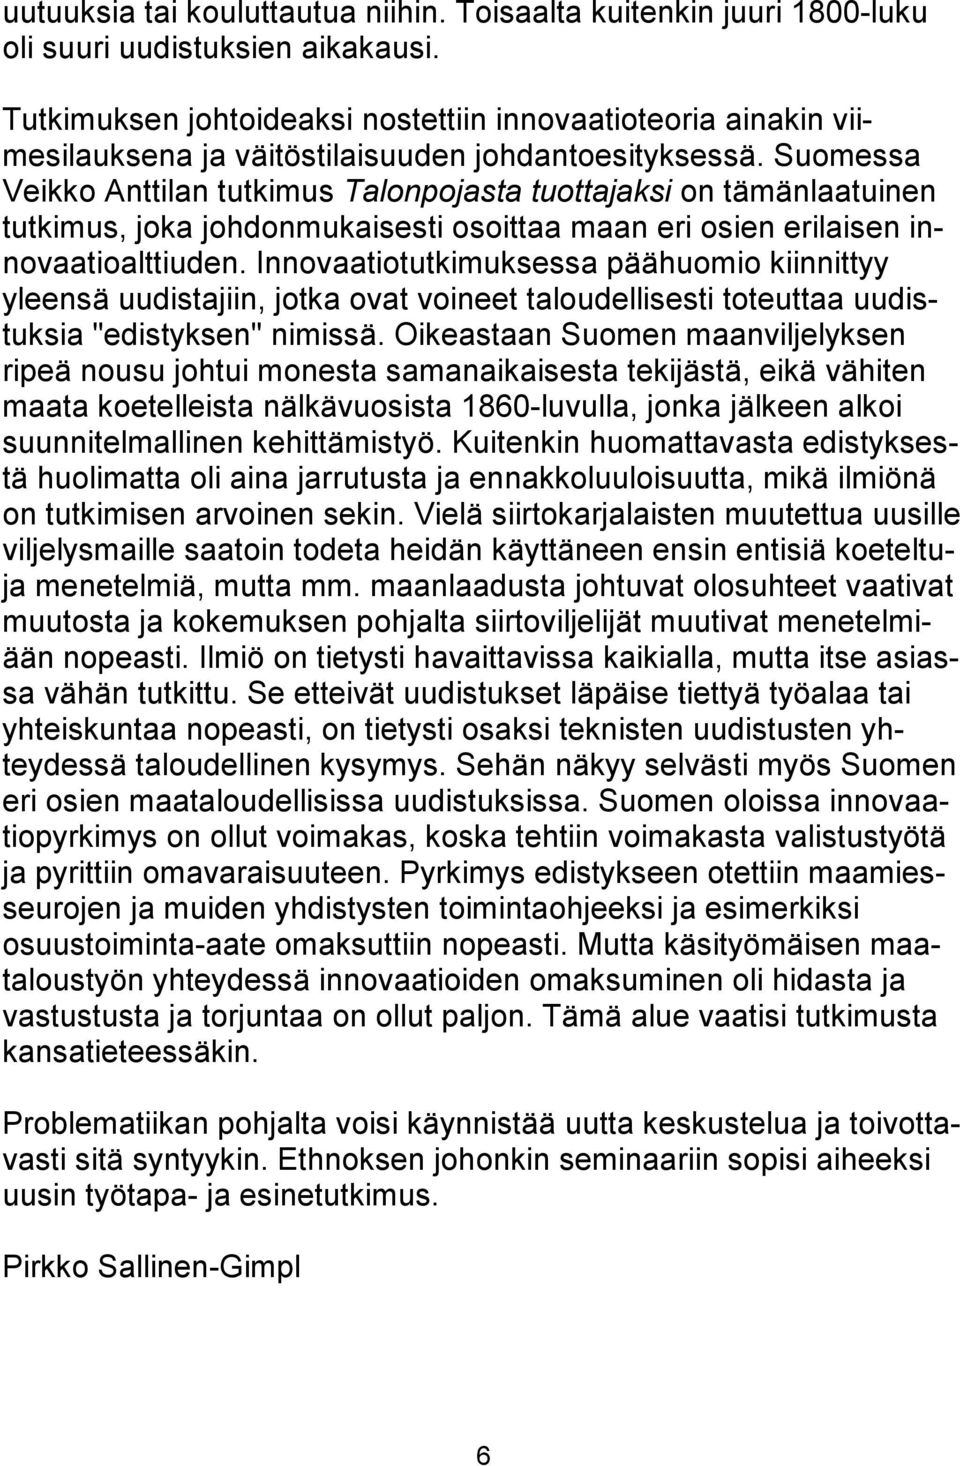 Suomessa Veikko Anttilan tutkimus Talonpojasta tuottajaksi on tämänlaatuinen tutkimus, joka johdonmukaisesti osoittaa maan eri osien erilaisen innovaatioalttiuden.